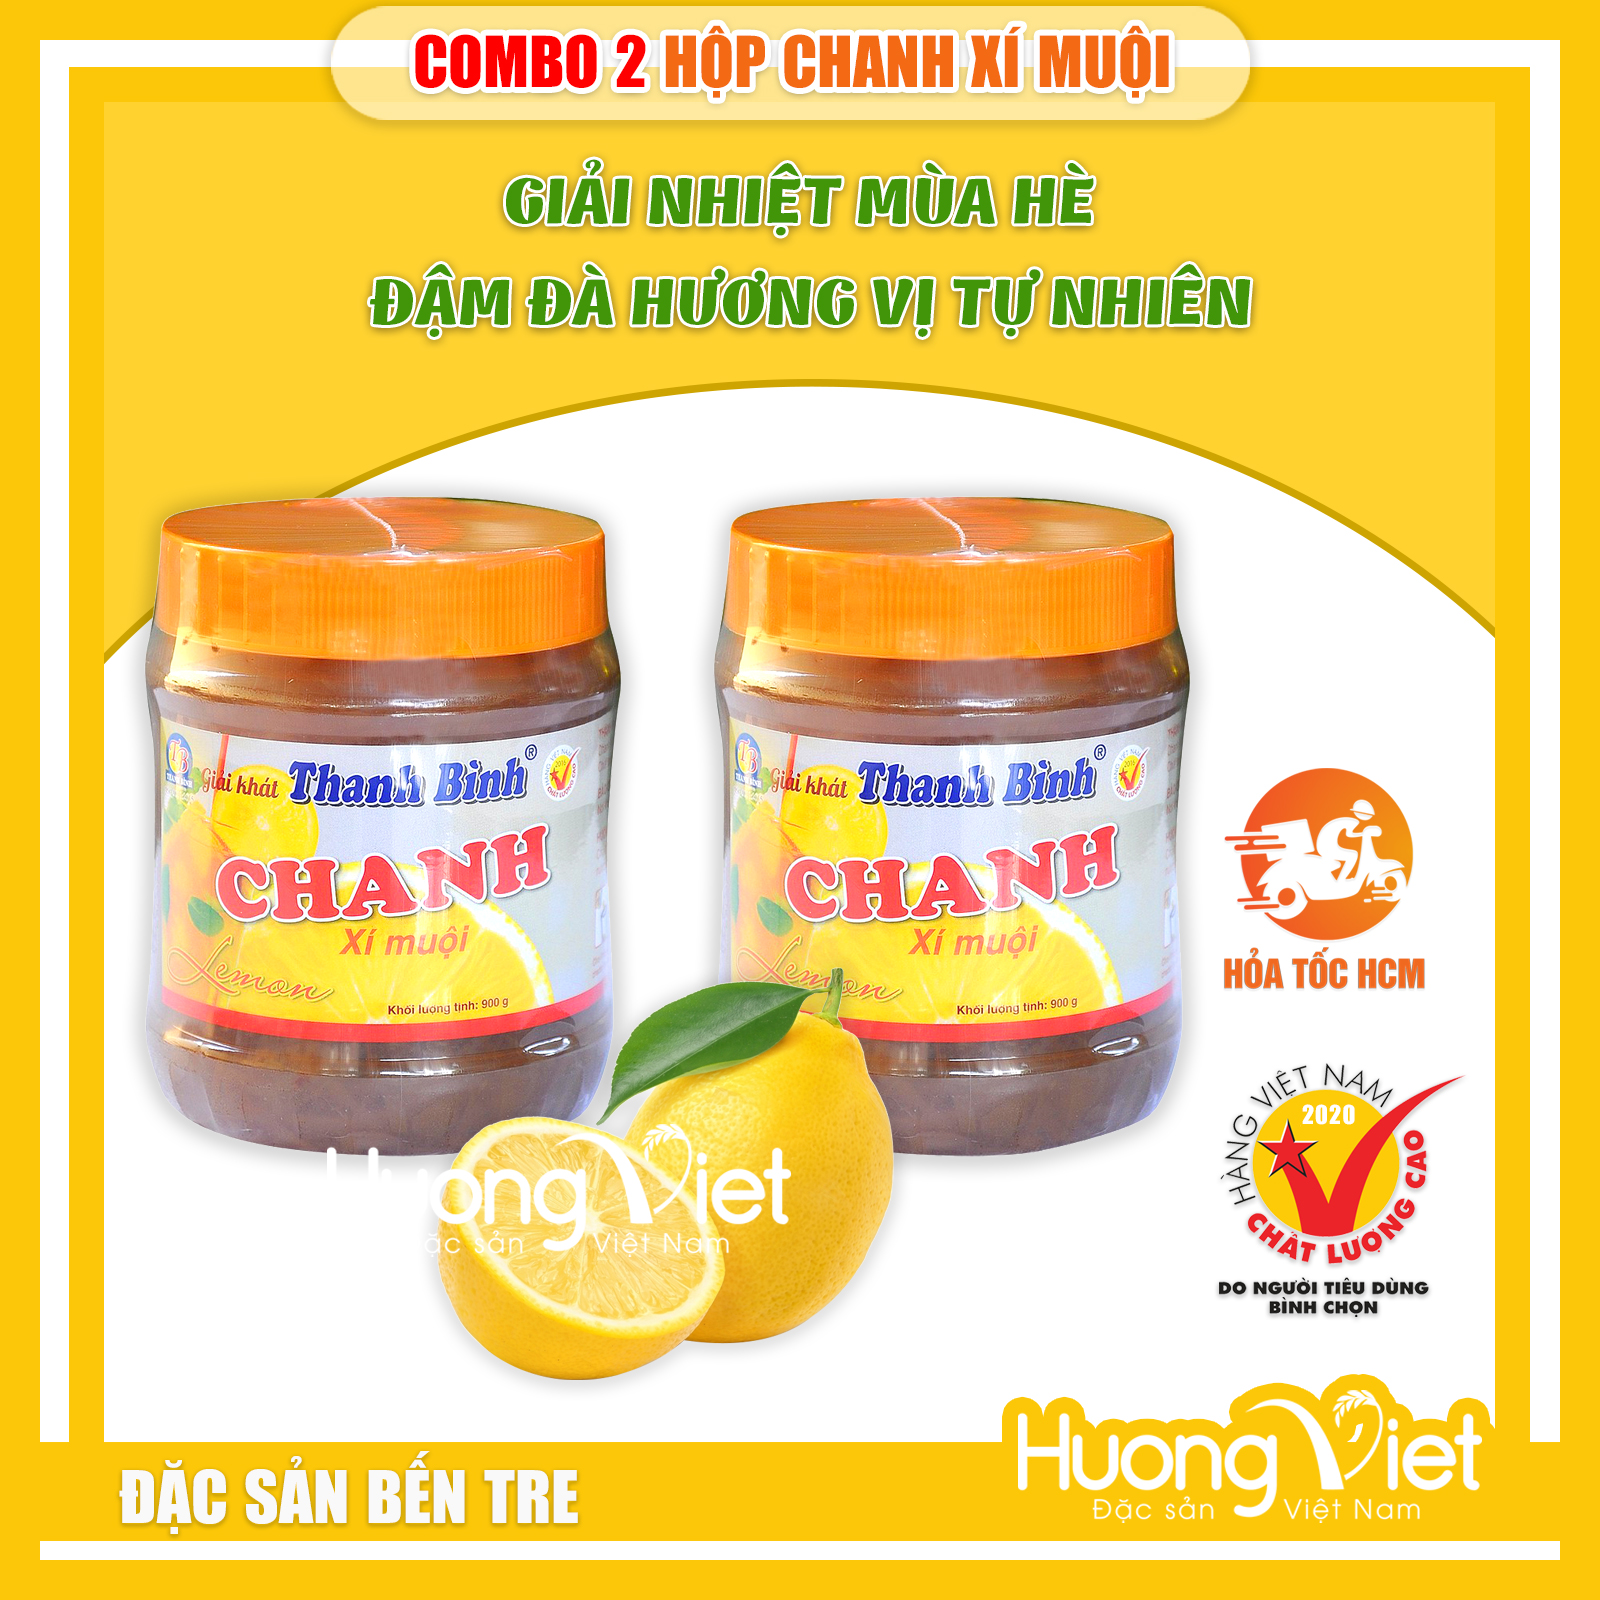 COMBO 2 CHANH xí muội Thanh Bình, chanh xí muội chua chua